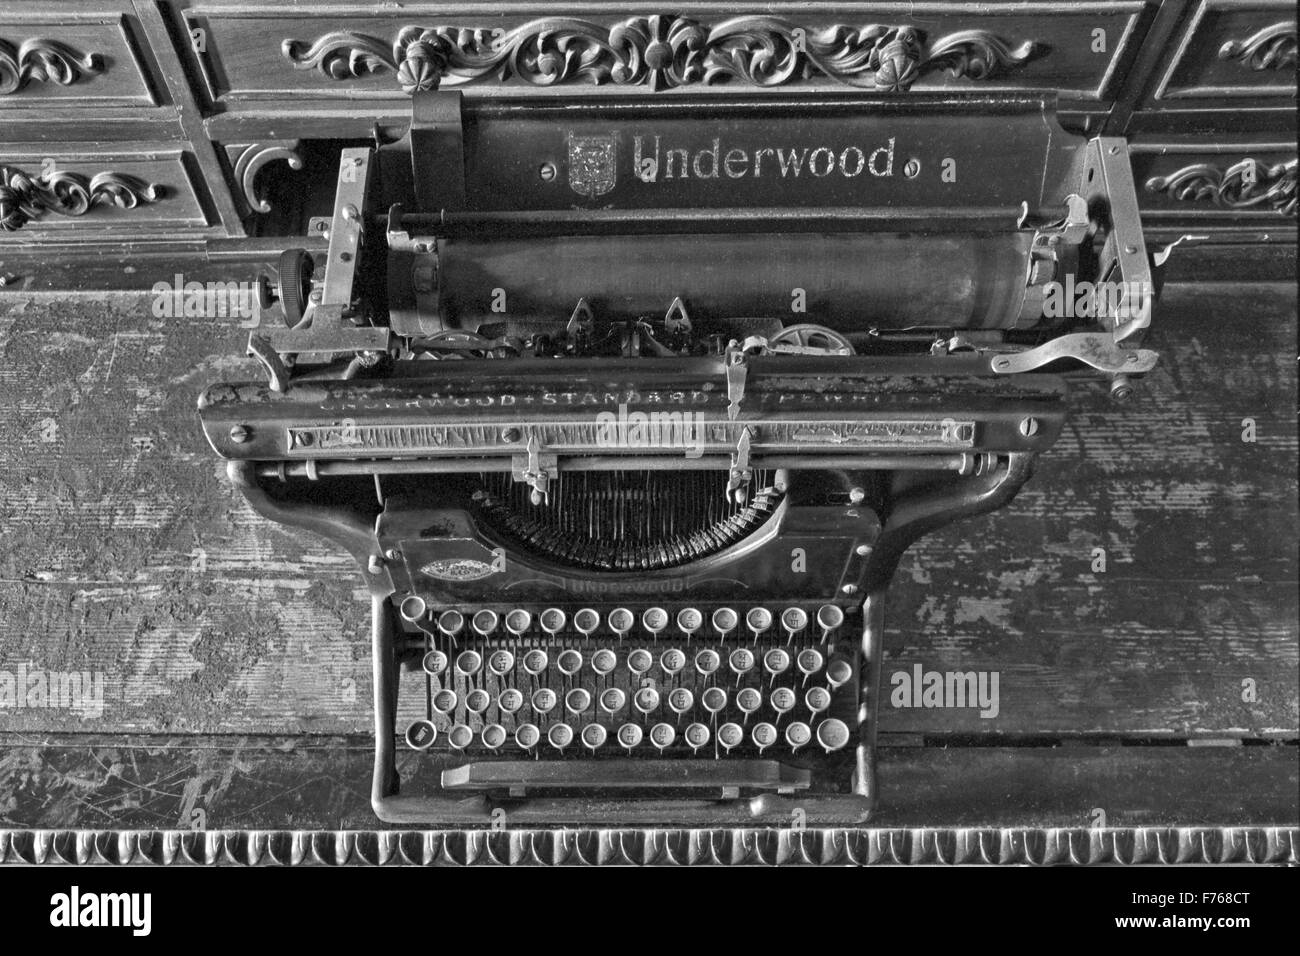 underwood typewriter, old underwood typewriter, antique underwood typewriter, vintage underwood typewriter, Stock Photo